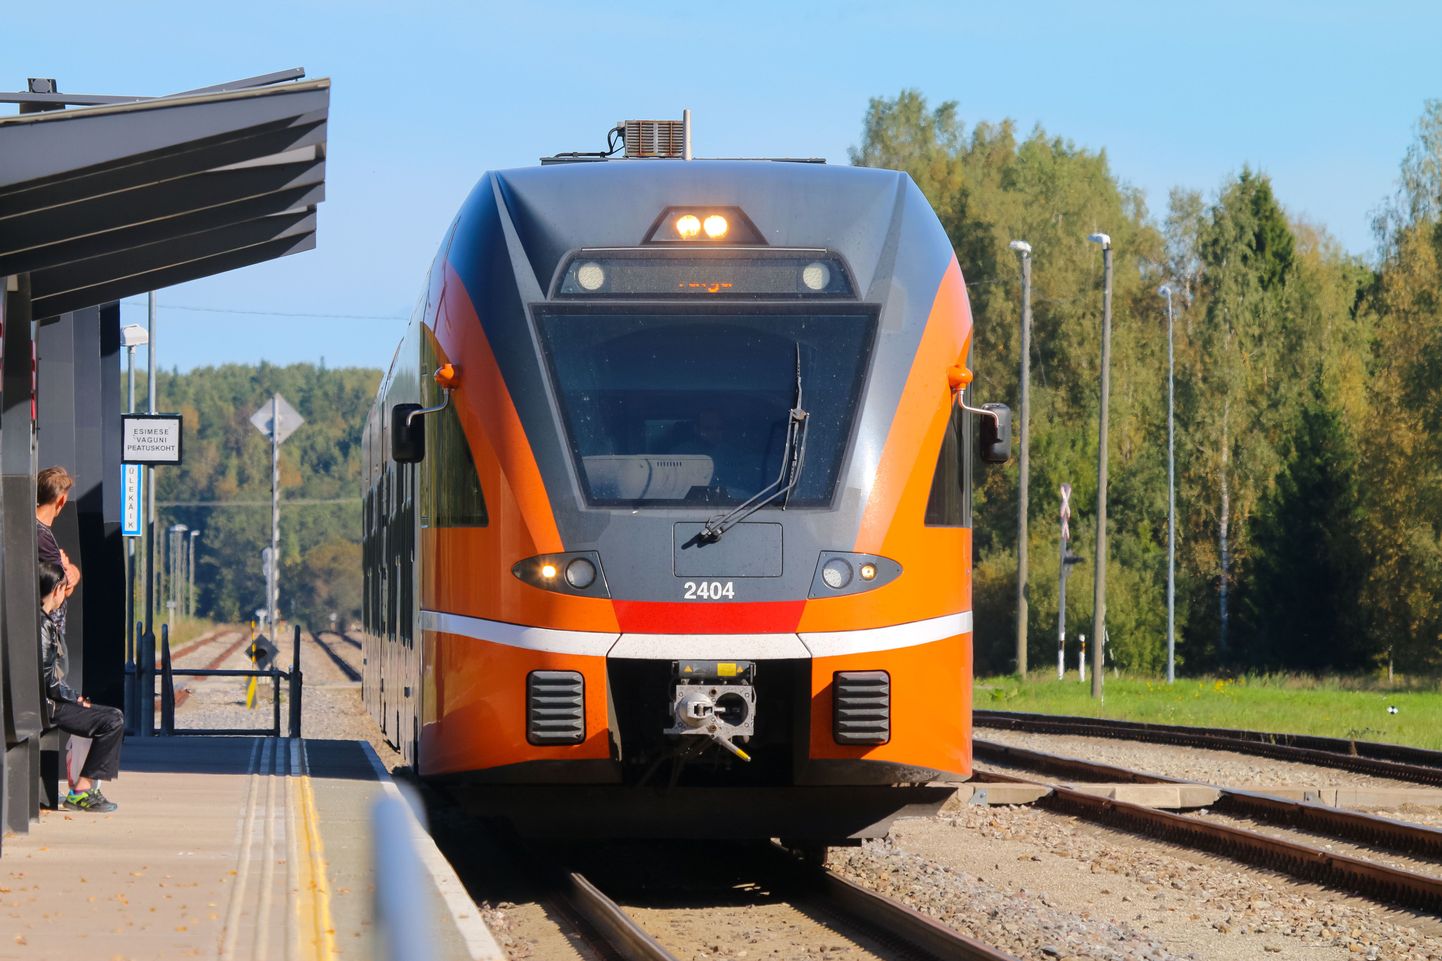 Septembris jätkuvad remonditööd Eesti raudteetaristul, mis toob kaasa muudatusi Elroni sõiduplaanides.